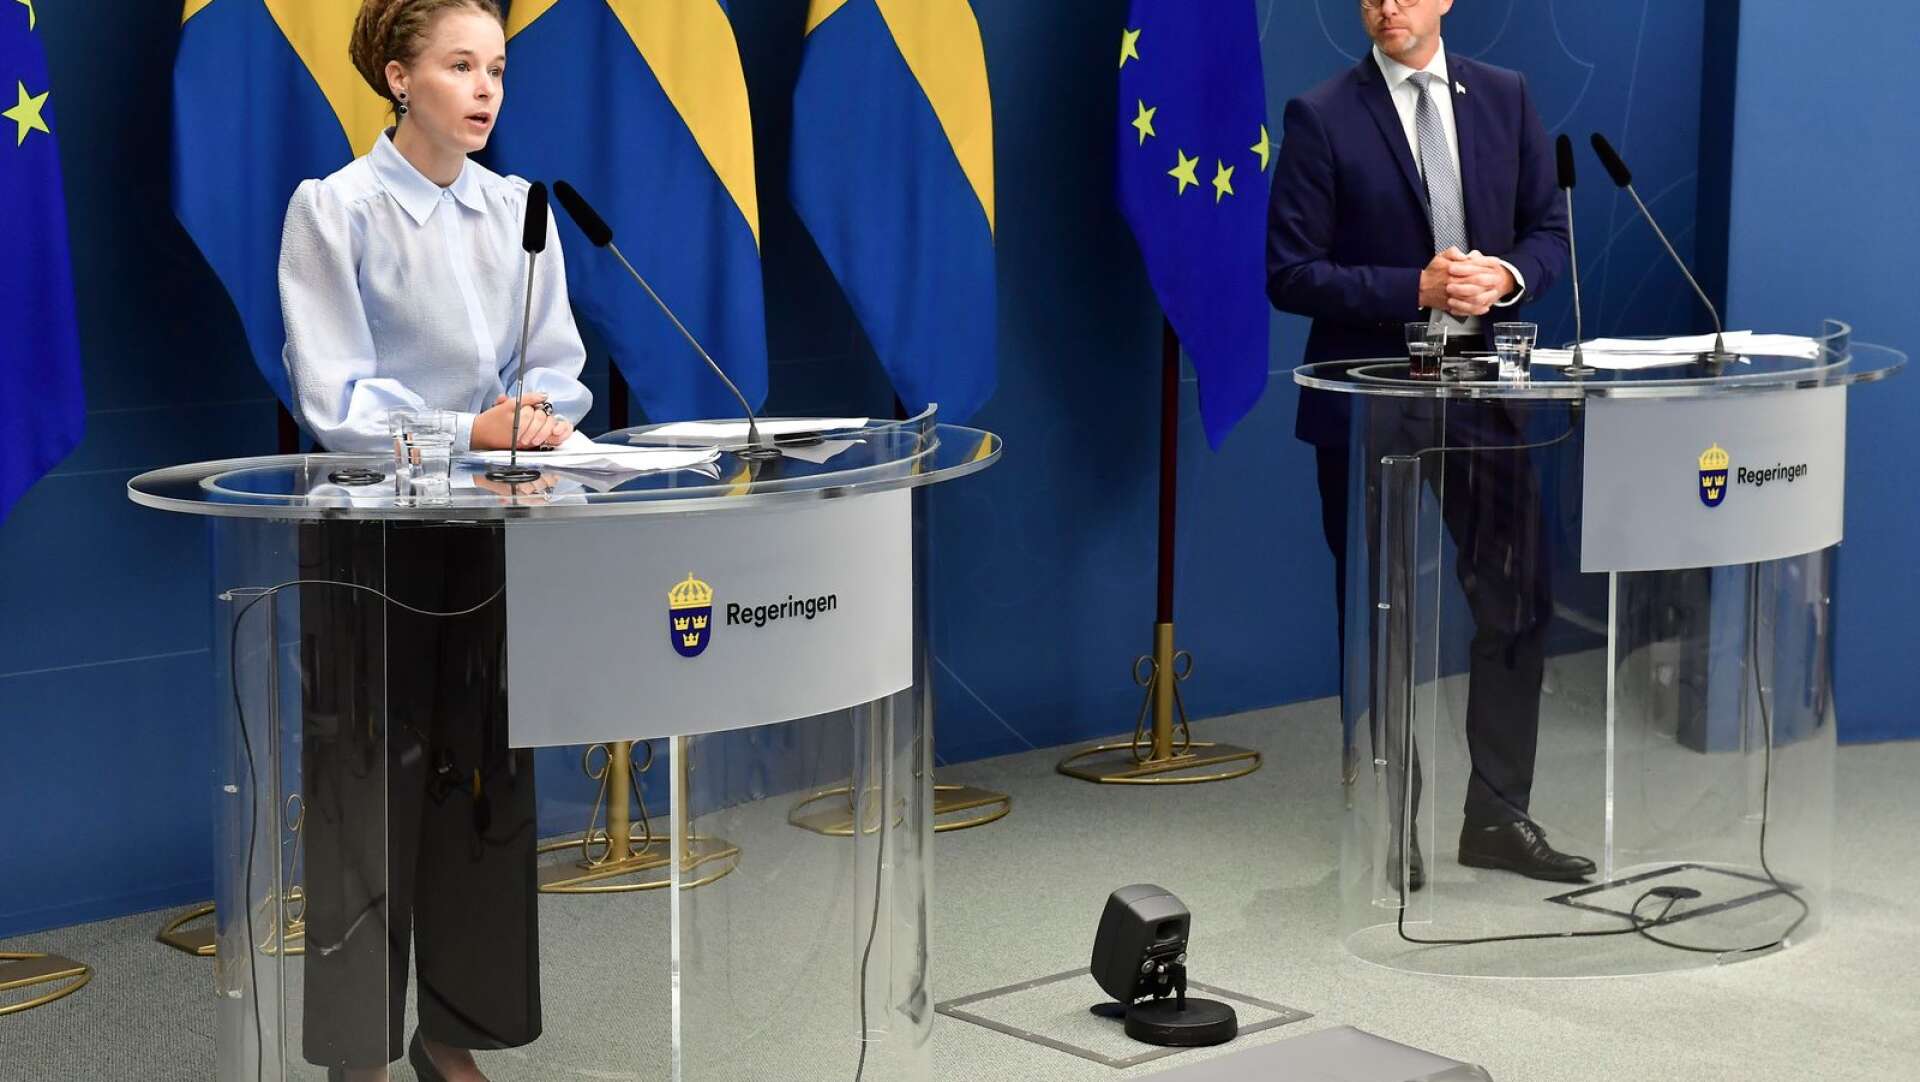 Ministrarna Amanda Lind (M) och Mikael Damberg (S) under presskonferensen när lättnader och stöd för idrotten lades fram.